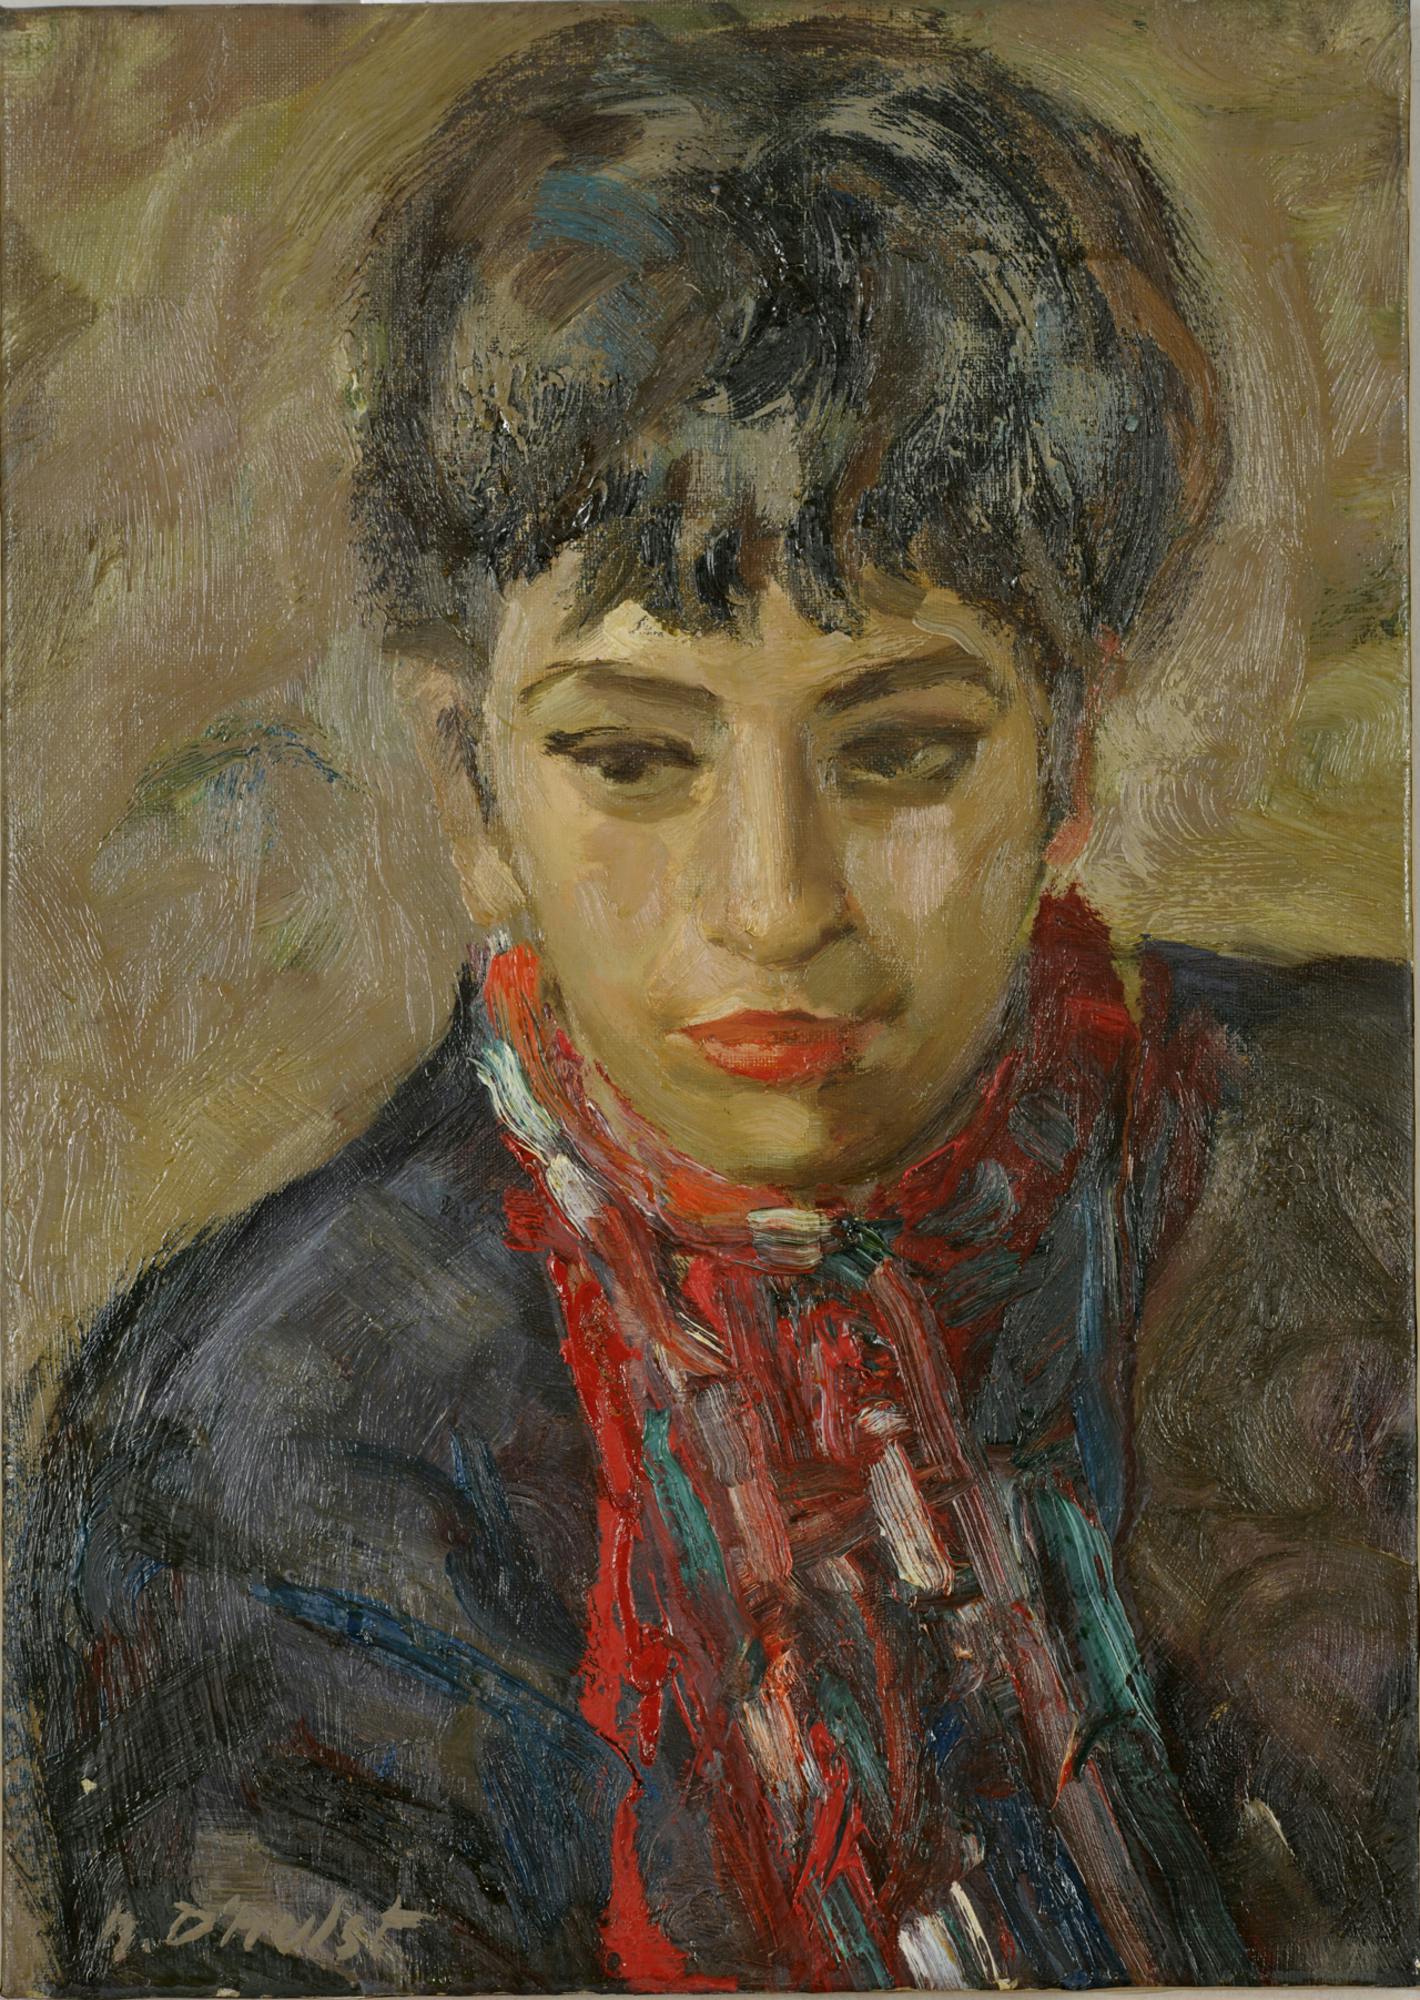 Noël D'Hulst (1916-1981) - Portrait de la galeriste roubaisienne Josée Courier (1919-2012) - Années 1950 - Huile sur toile - Ancien fonds de la ville de Roubaix - Musée La Piscine. 